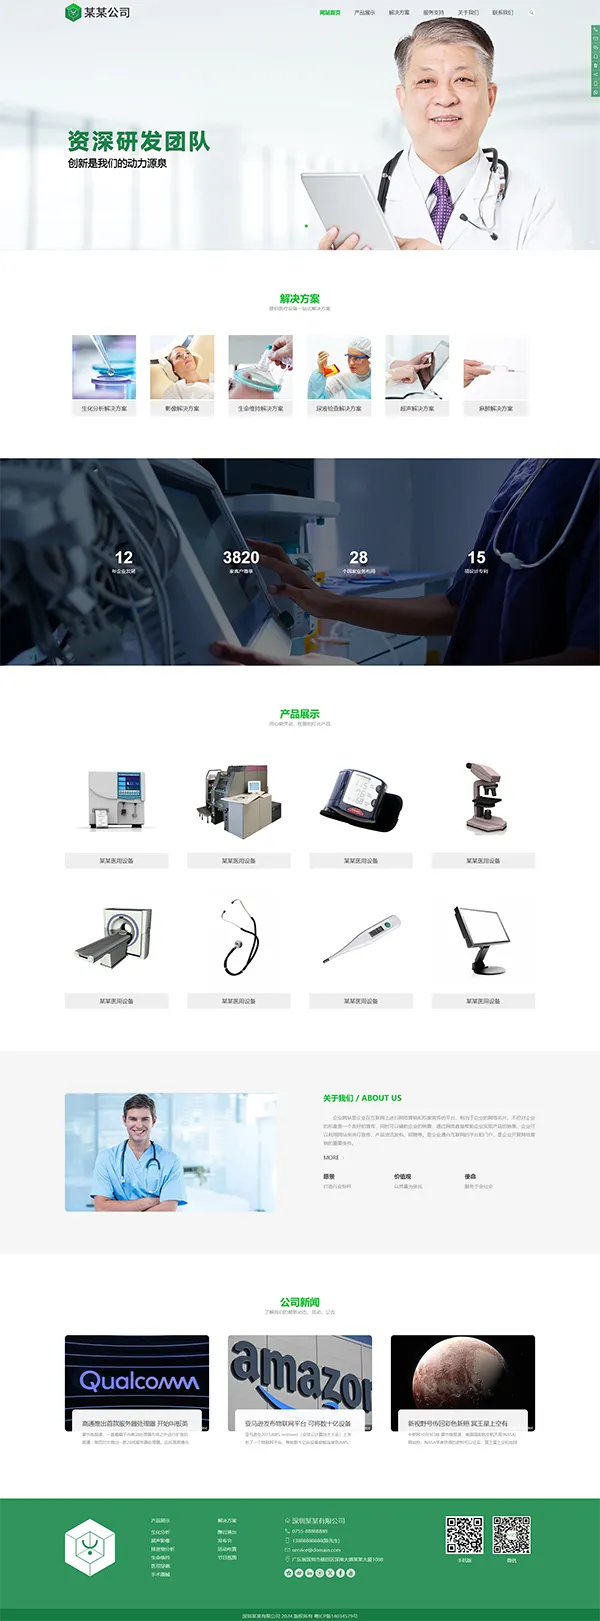 医疗器械网站模板、设备网站模板、医药等企业。